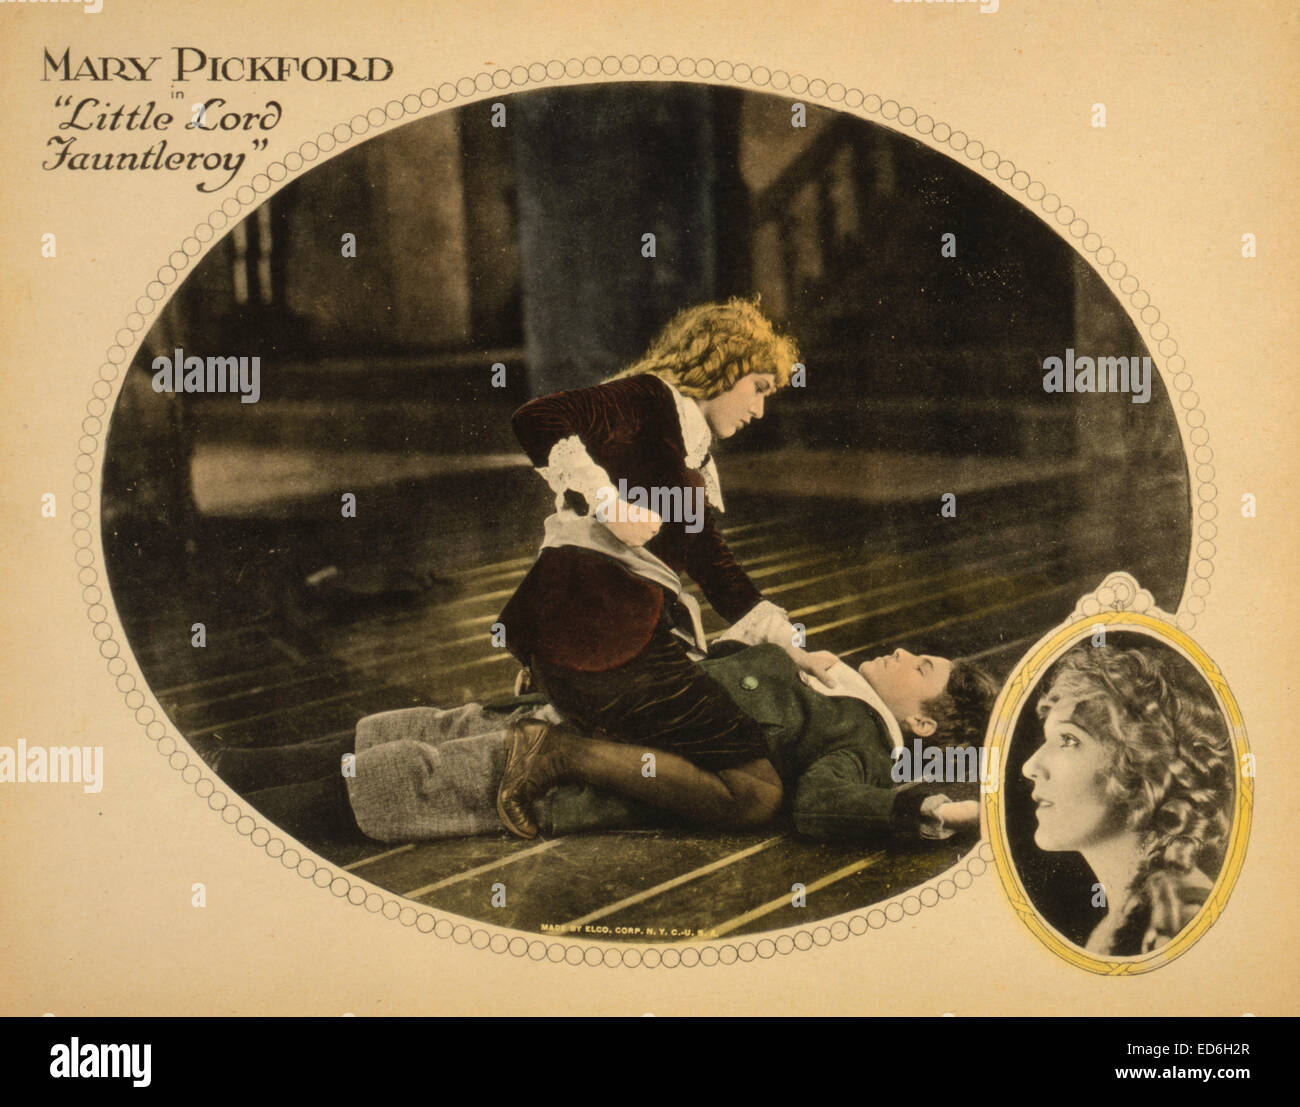 Carte Hall montrant Mary Pickford à propos de perforer l'acteur Francis Marion lors d'une scène du film "Petit Lord Fauntleroy", 1921 Banque D'Images